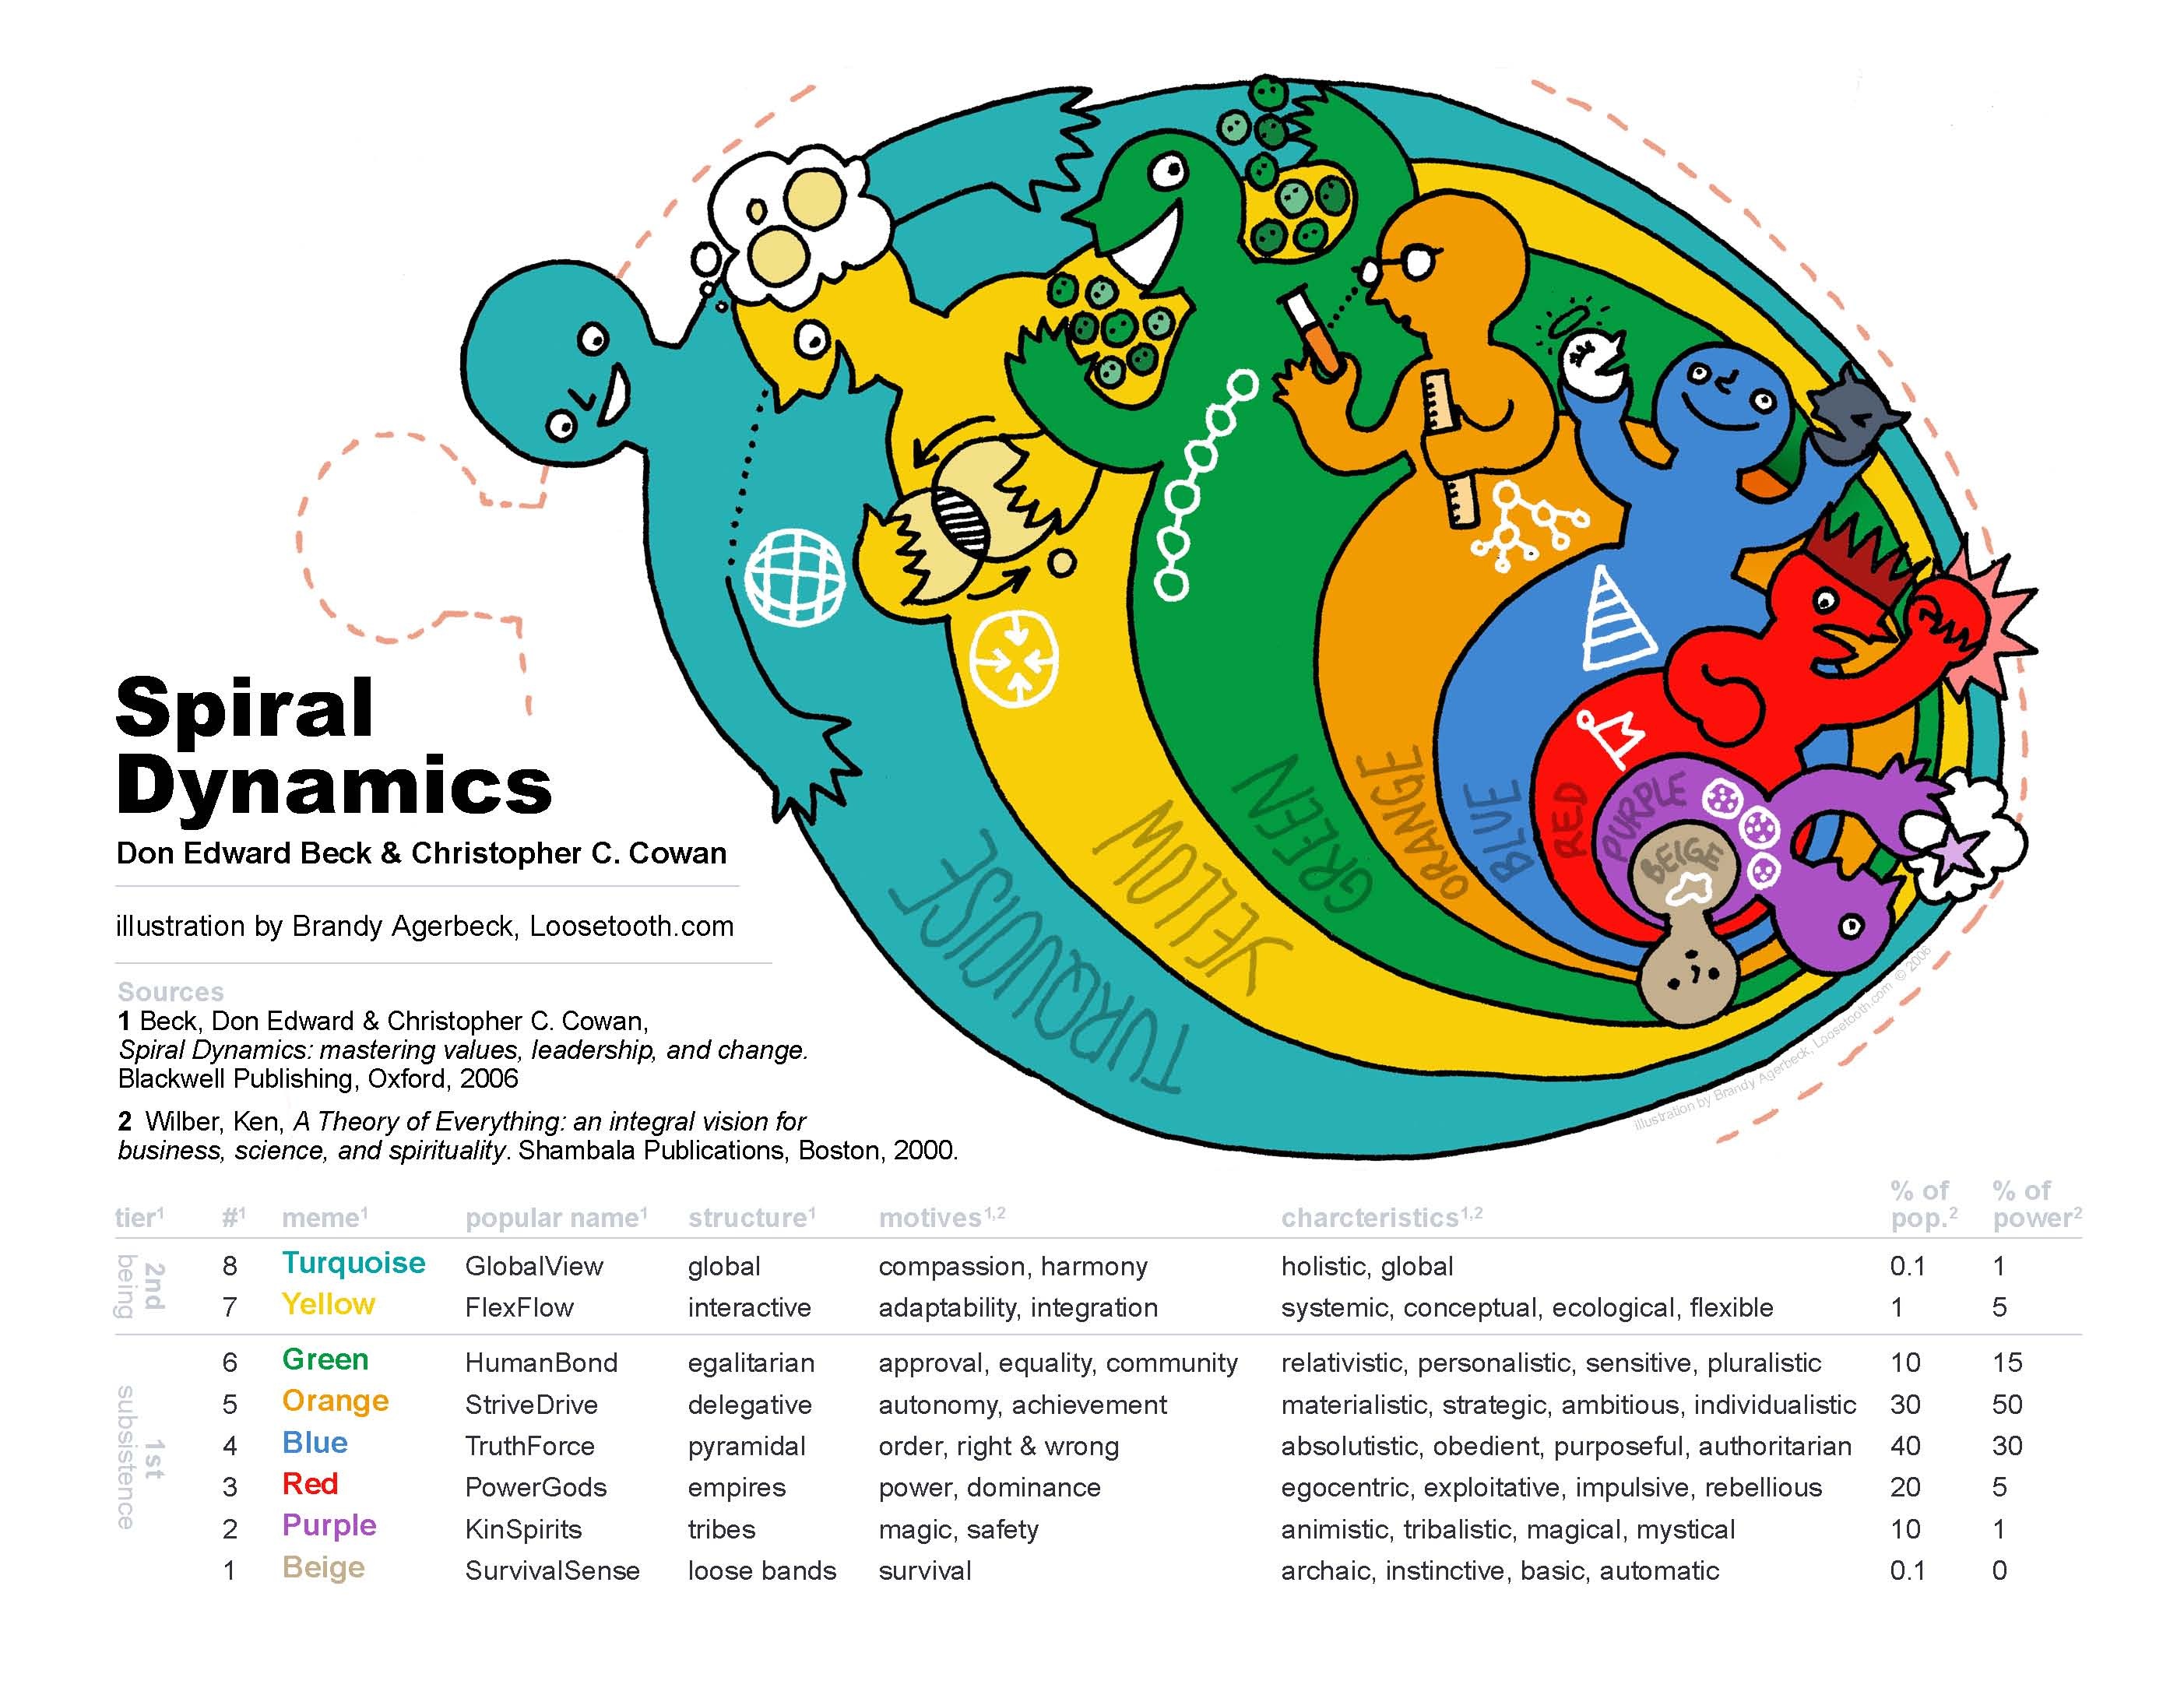 Spirālveida dinamika, attēls no http://www.cruxcatalyst.com/2013/09/26/spiral-dynamics-a-way-of-understanding-human-nature/